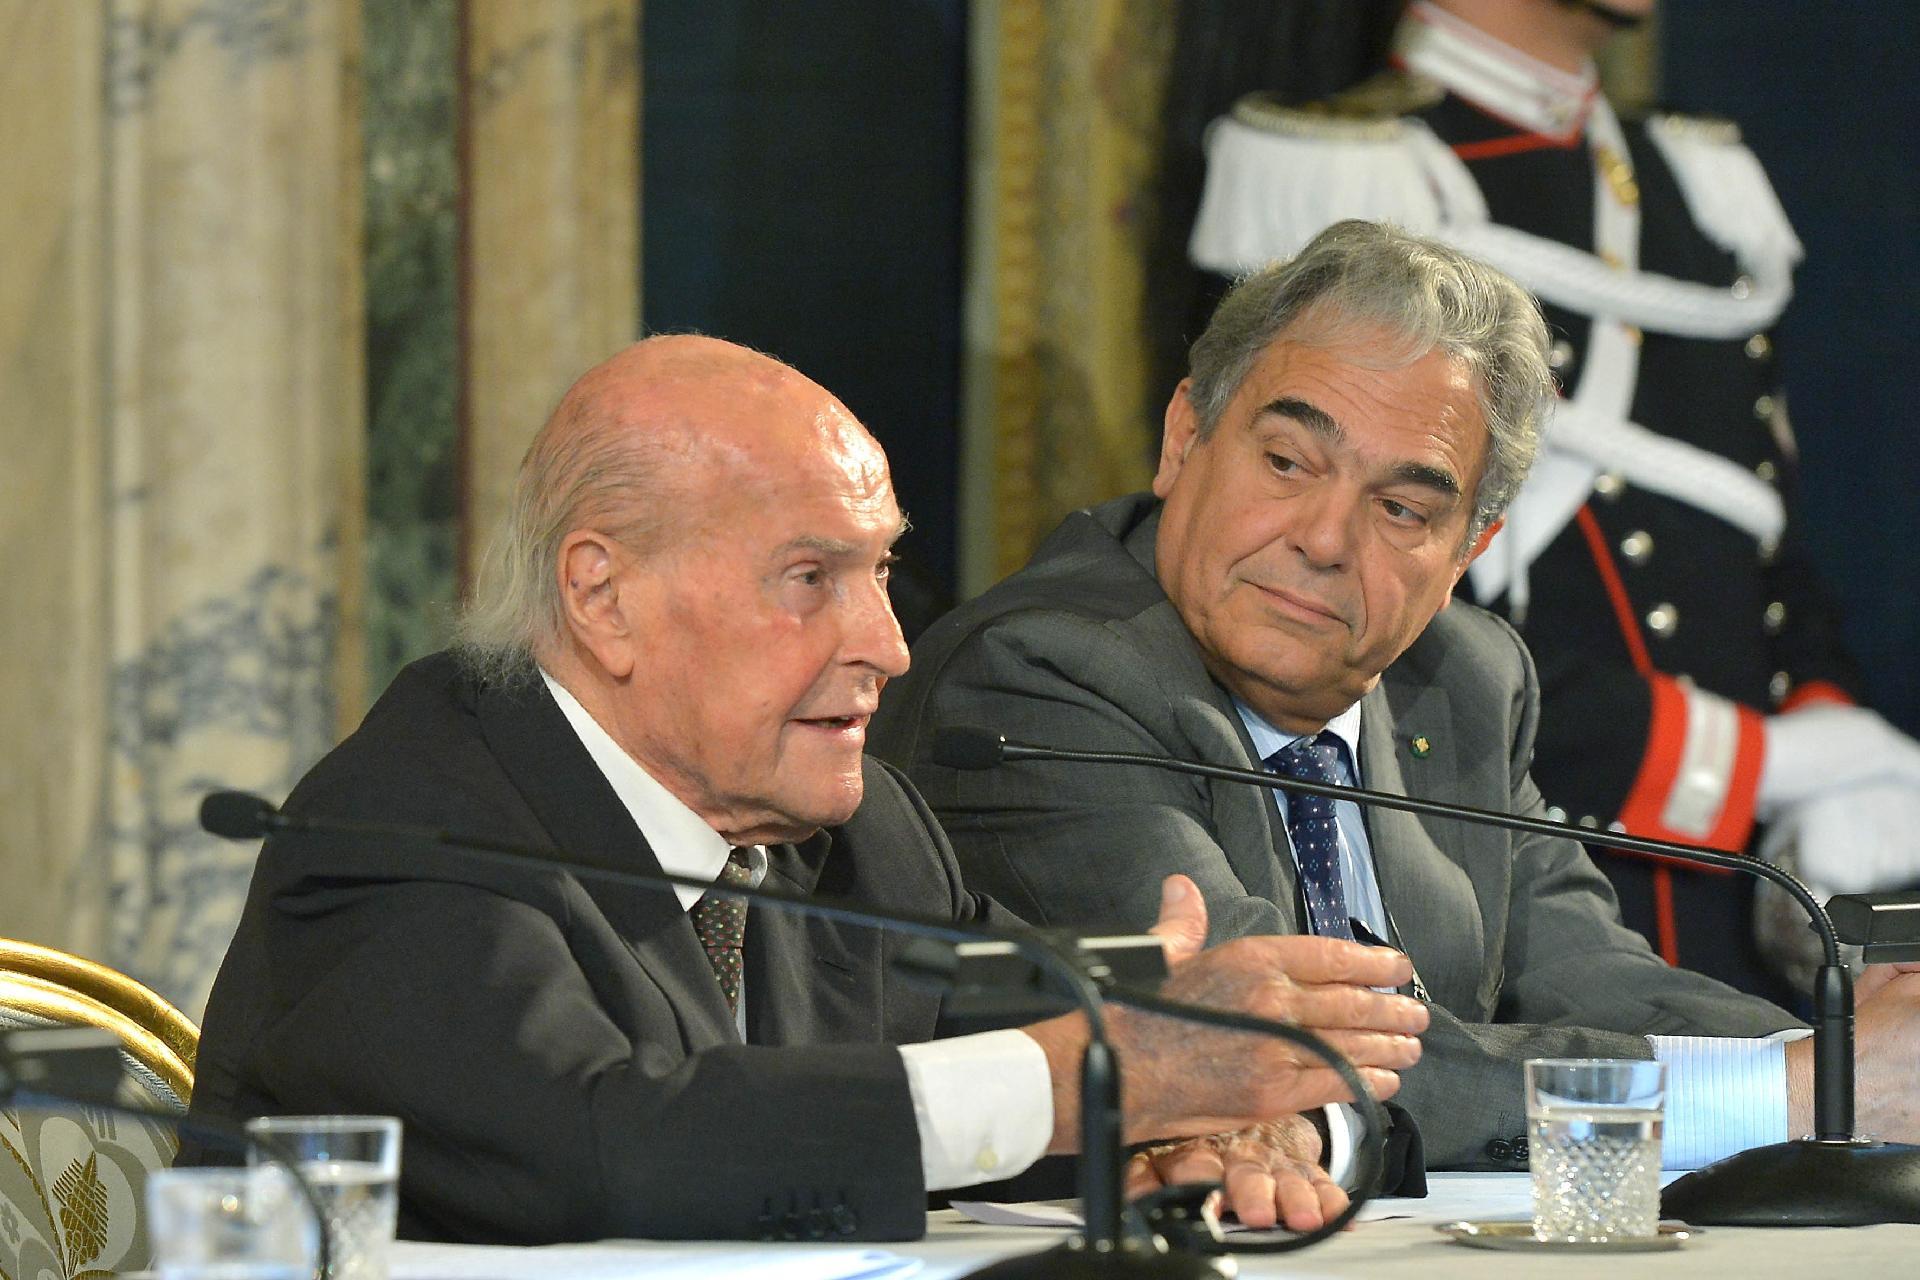 Il Prof. Umberto Veronesi e il Prof. Carlo Croce nel corso della celebrazione della Giornata Nazionale per la Ricerca sul Cancro.